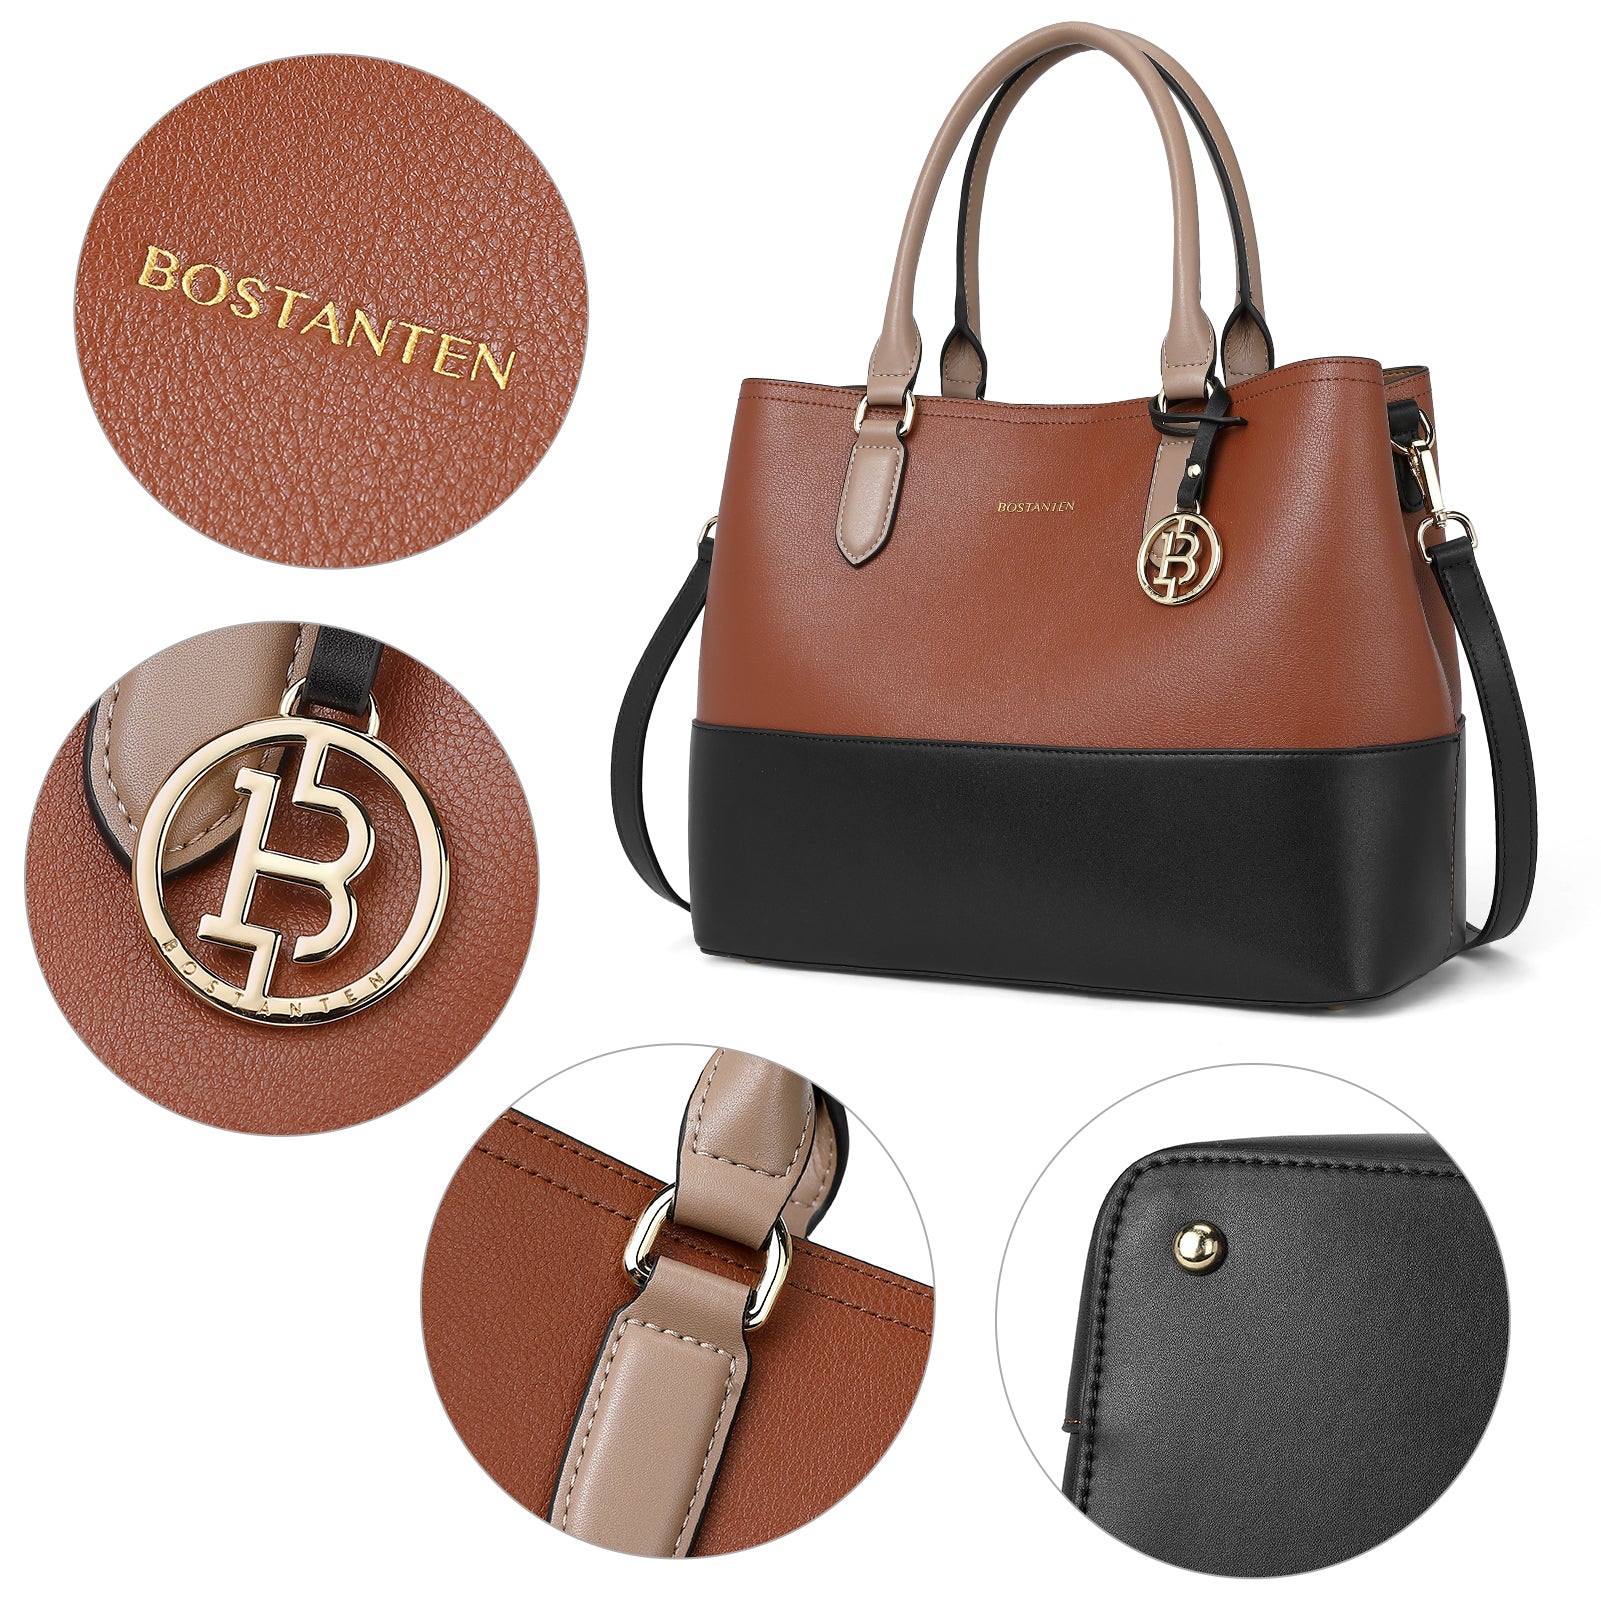 YNIQUE Satchel Purses and Handbags for Women Shoulder Tote Bags Wallets -  Walmart.com